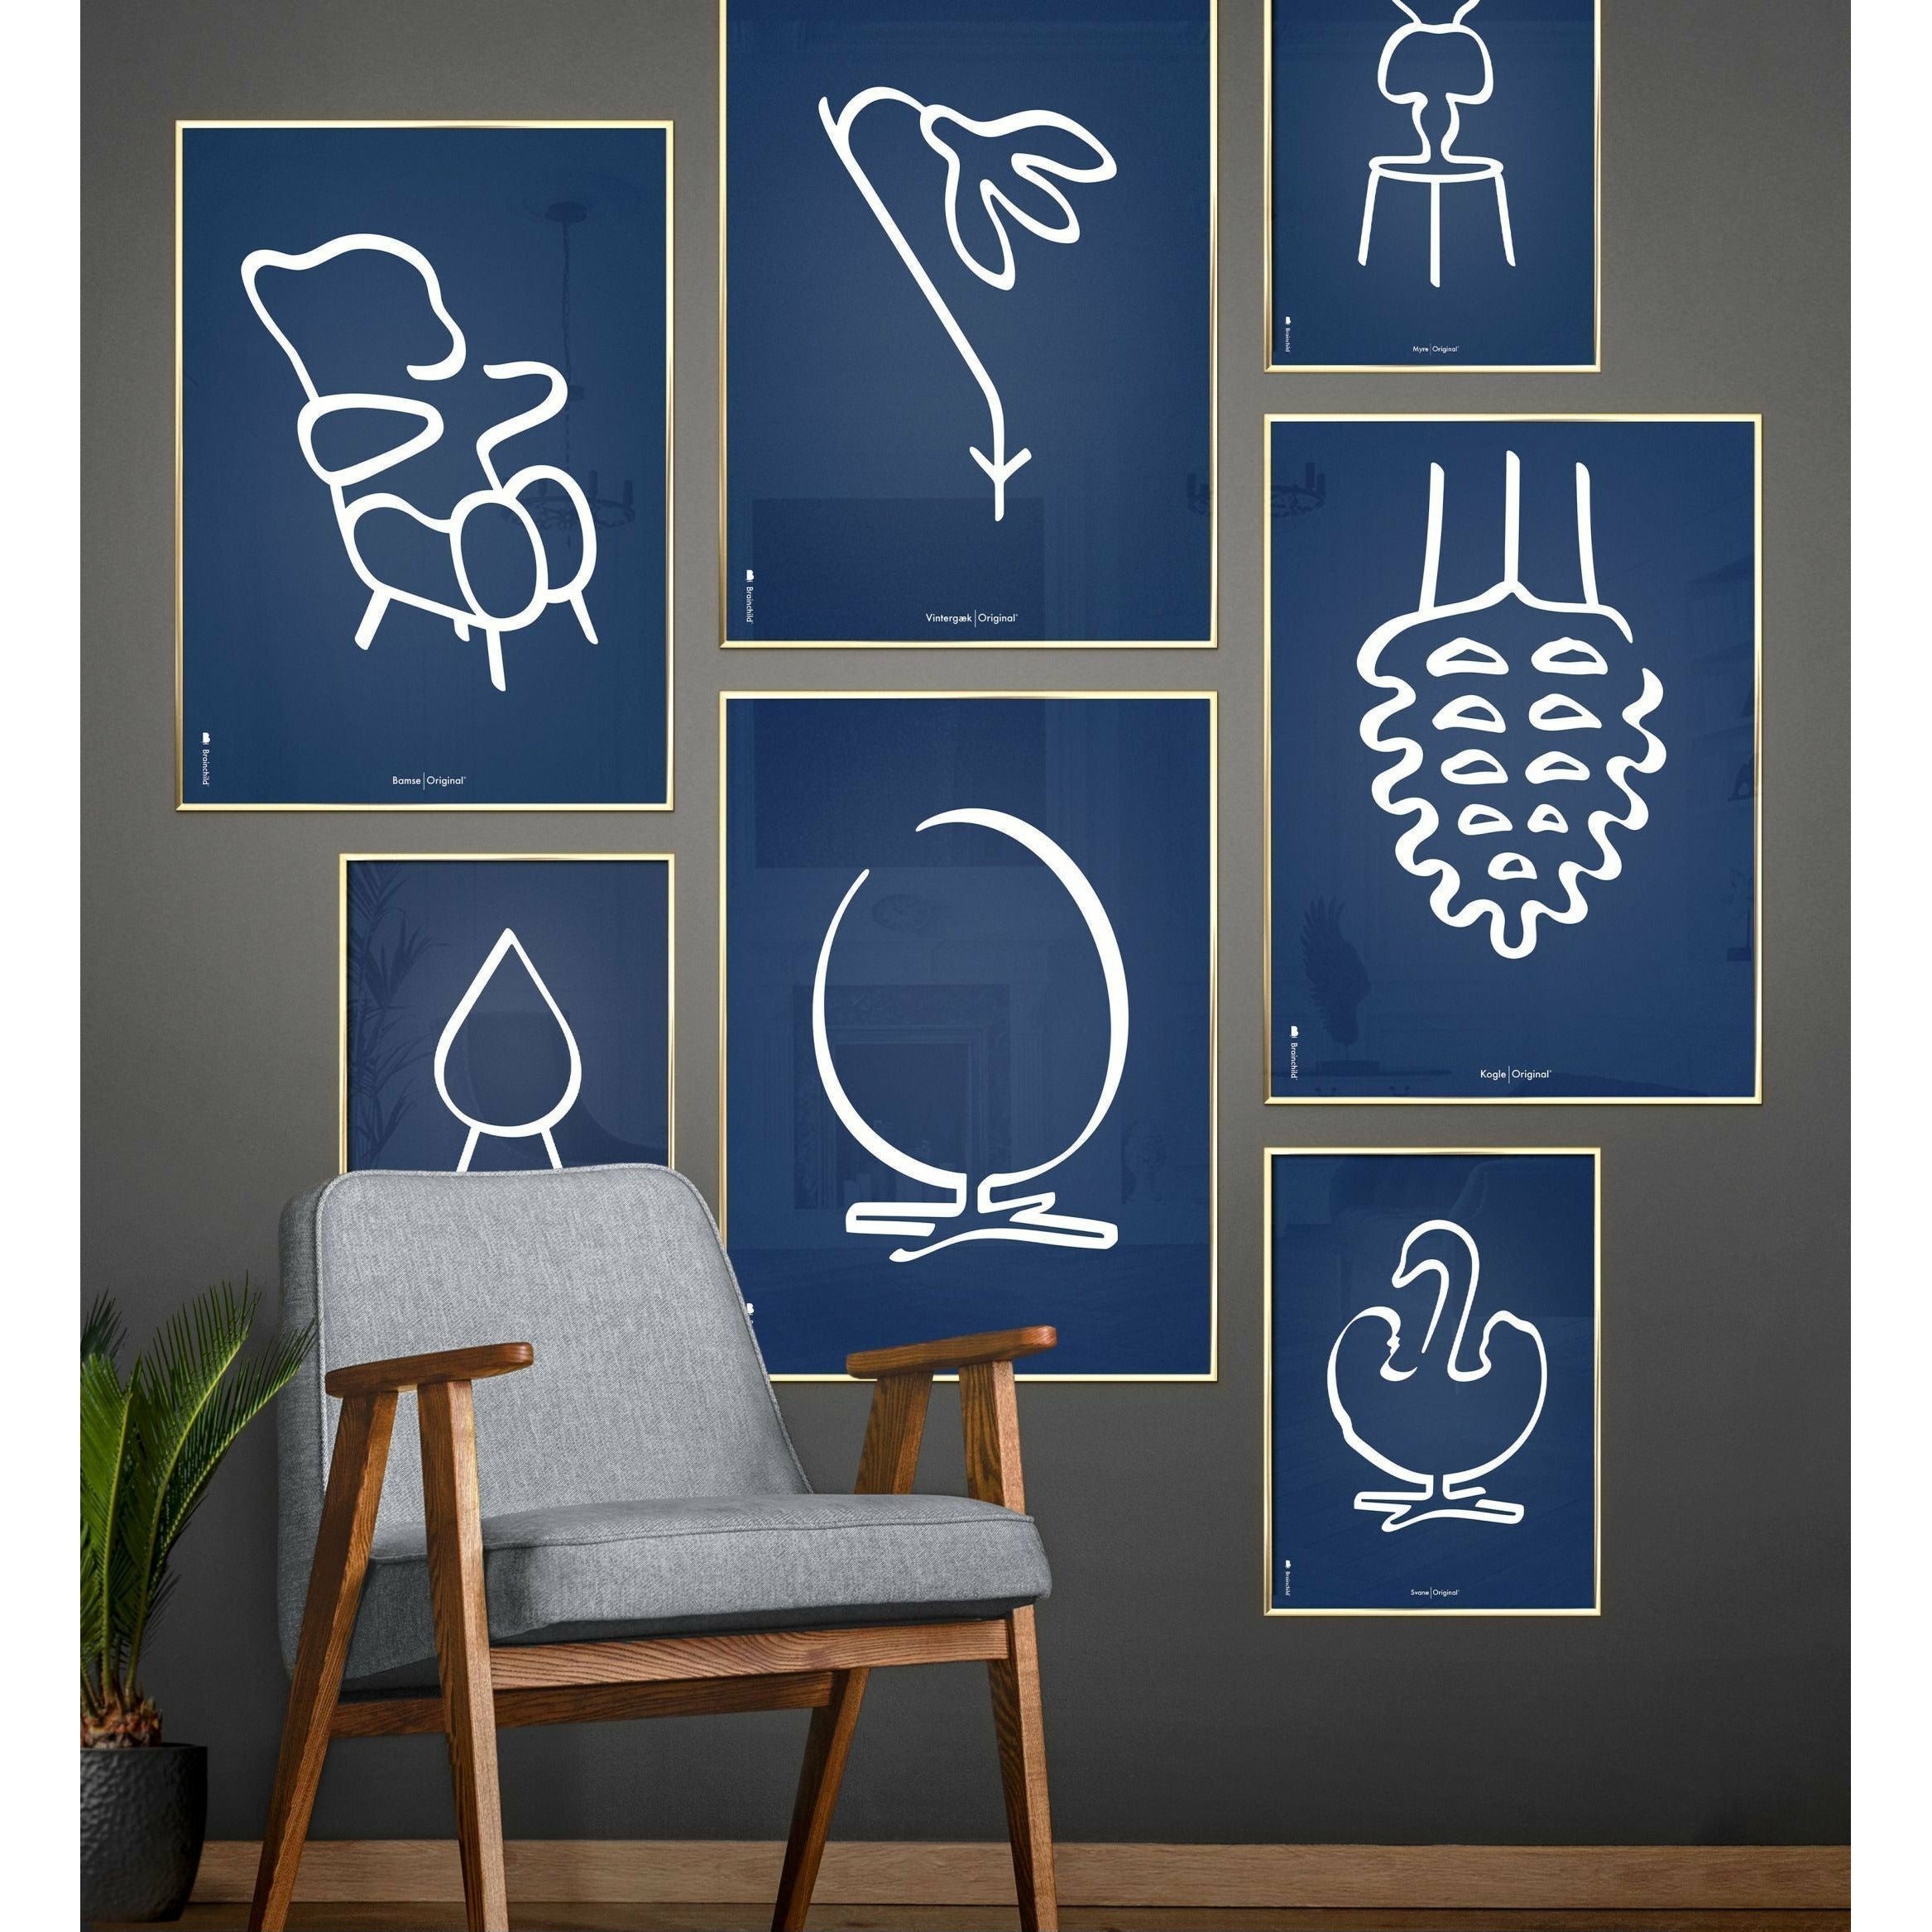 Plakat linii kropli pomysłu, rama wykonana z jasnego drewna 50x70 cm, niebieskie tło